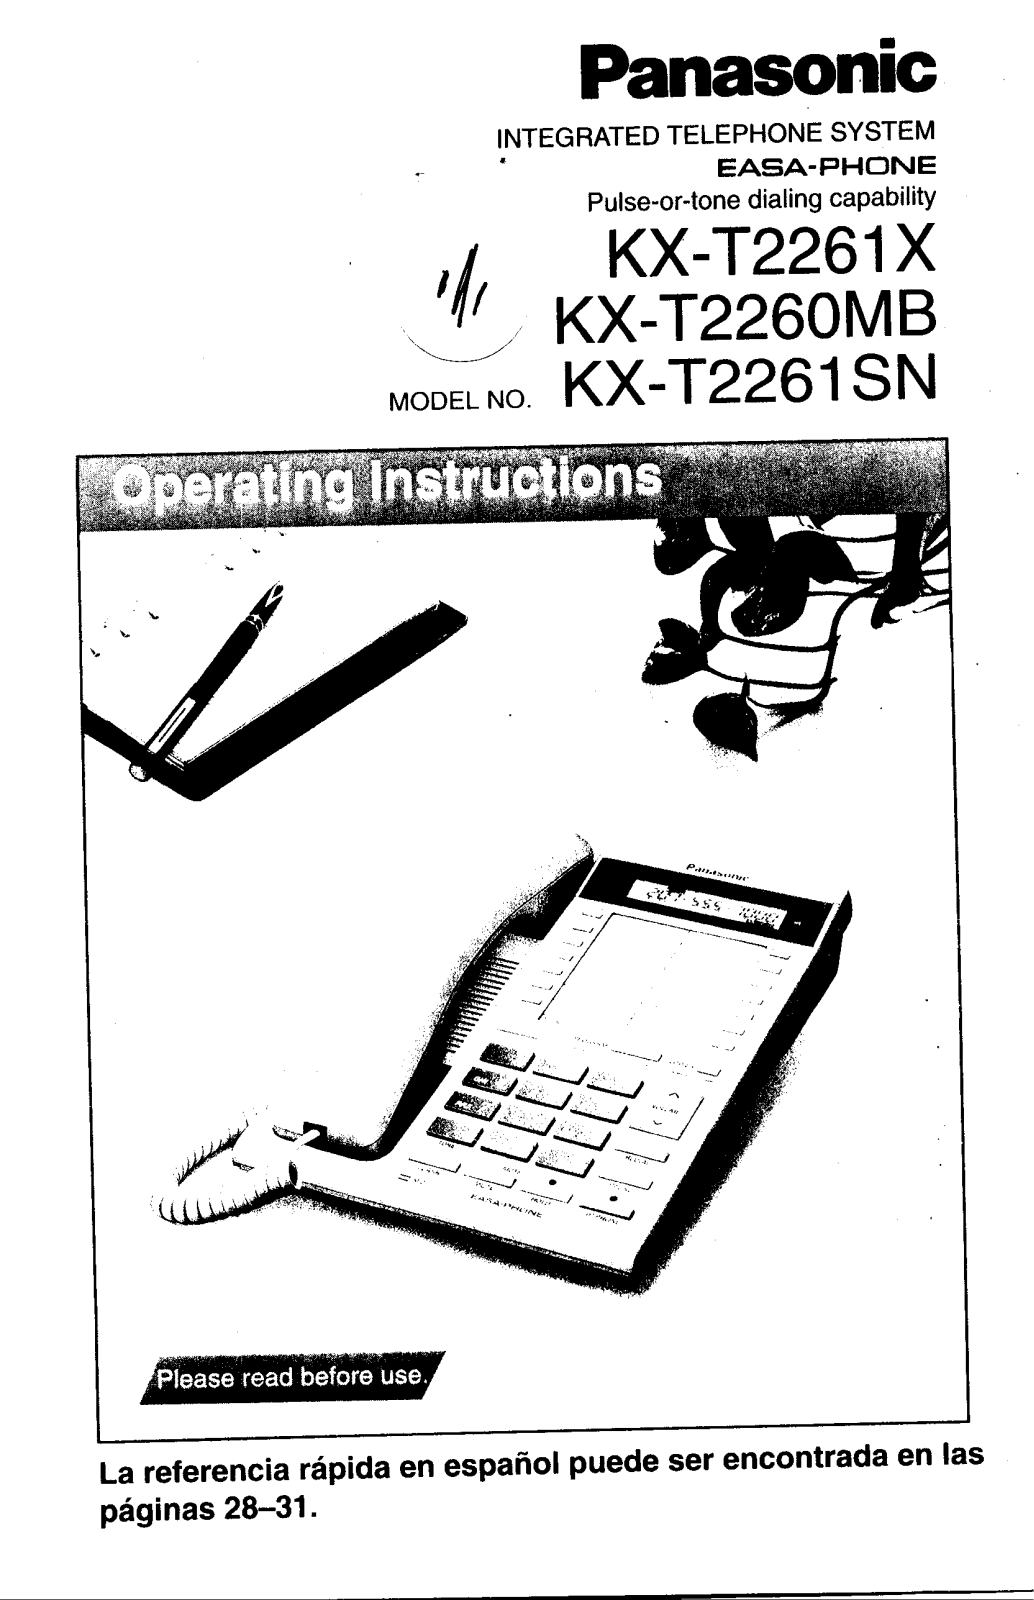 Panasonic kx-t2261 Operation Manual